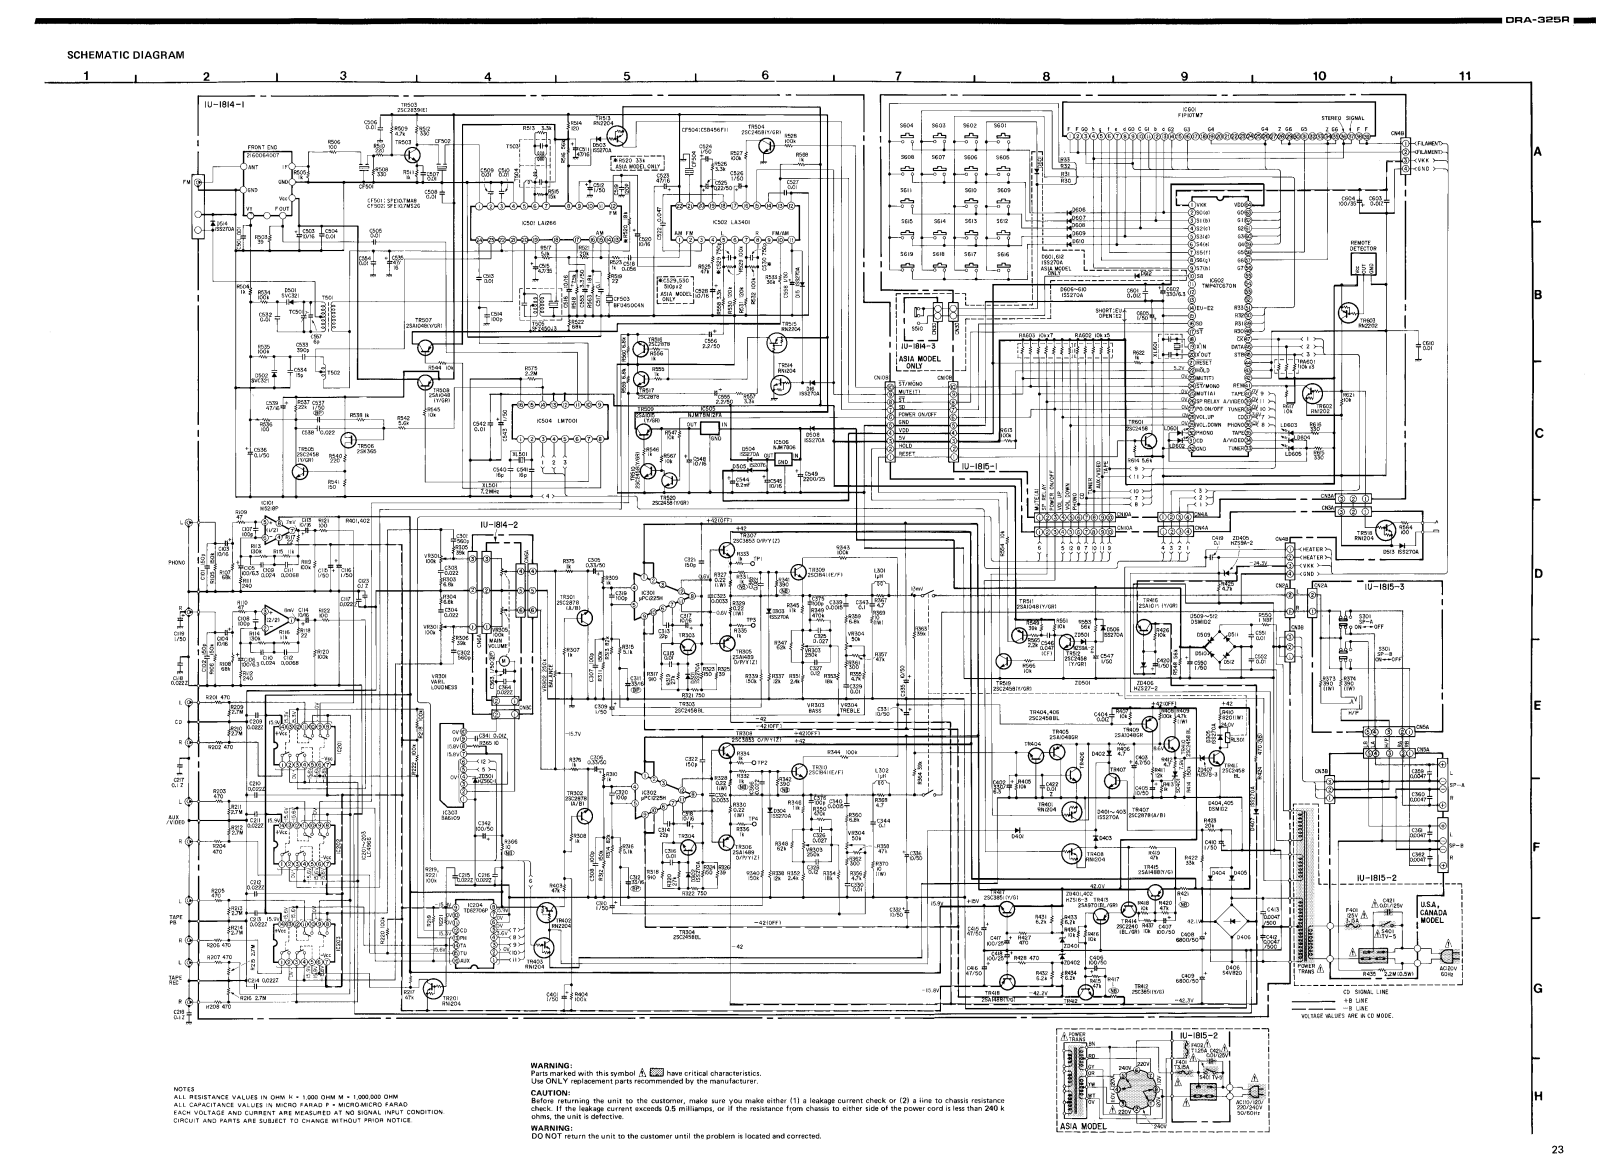 Denon RECEIVER-DRA-325R Schematic Diagram 1